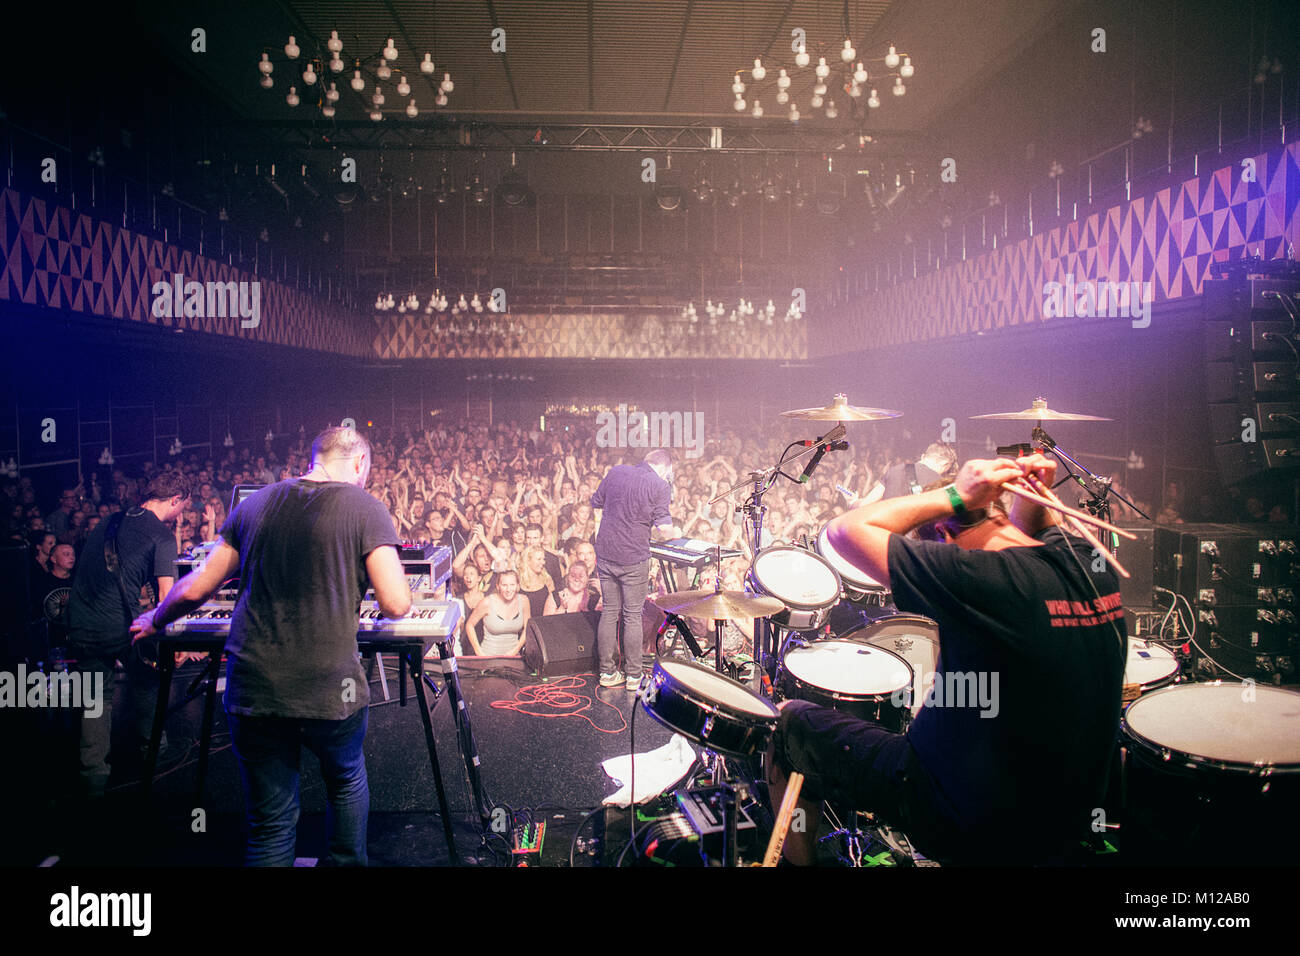 Le groupe de rock électronique danois Veto effectue un concert live à Vega à Copenhague. Danemark 12/10 2012. Banque D'Images